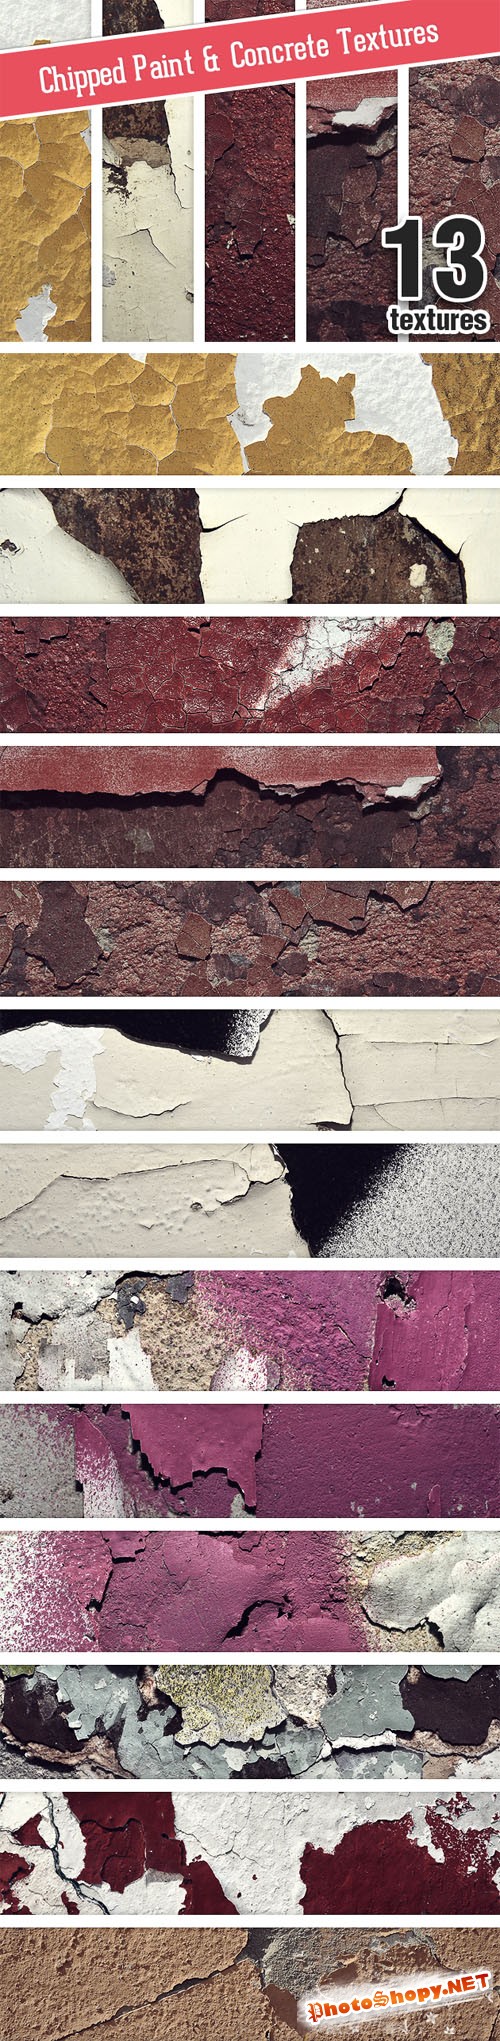 Designtnt - Chipped Paint Concrete Set 1